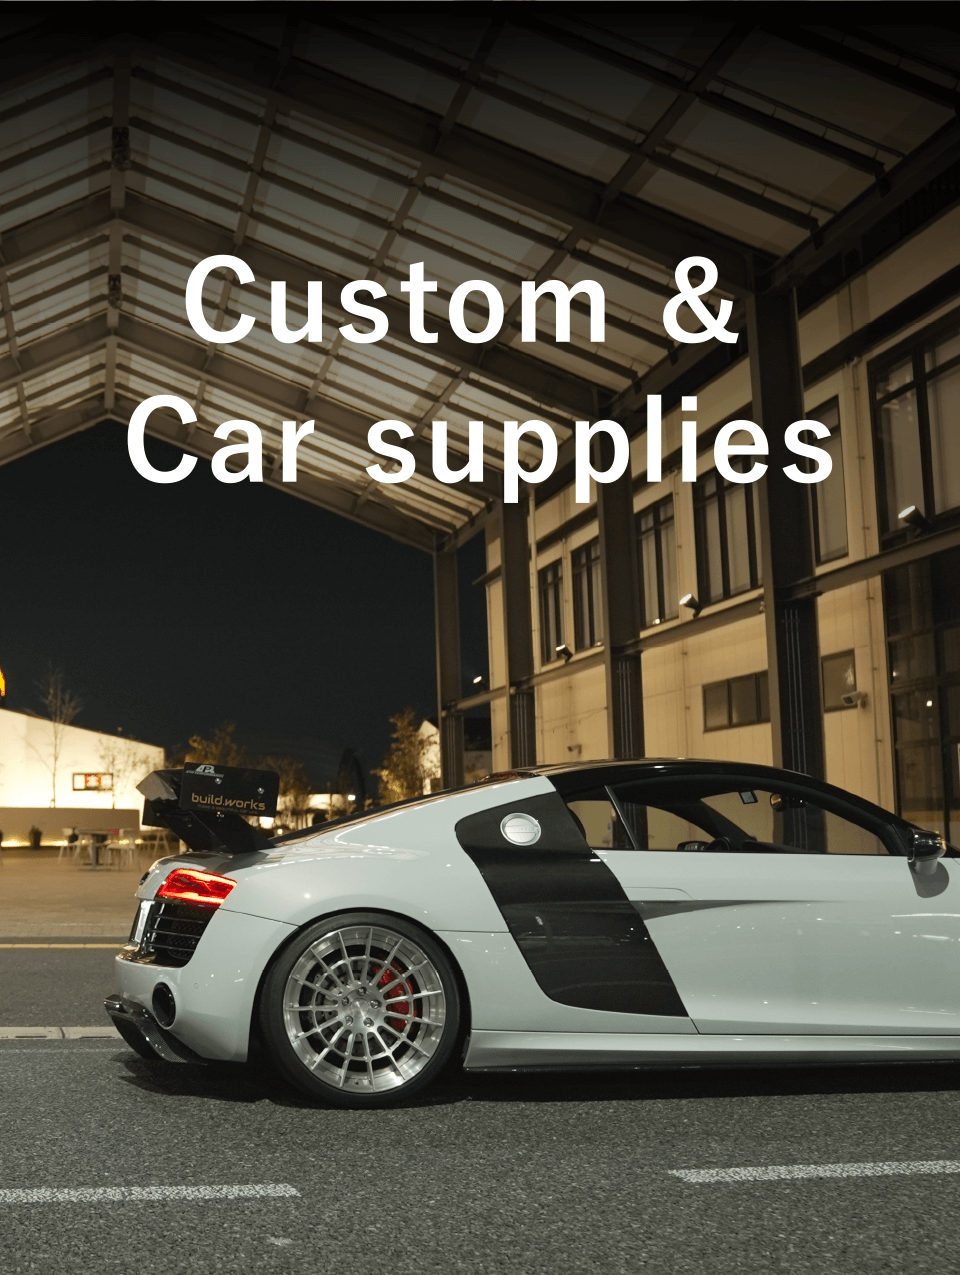 Custom & Car supplies